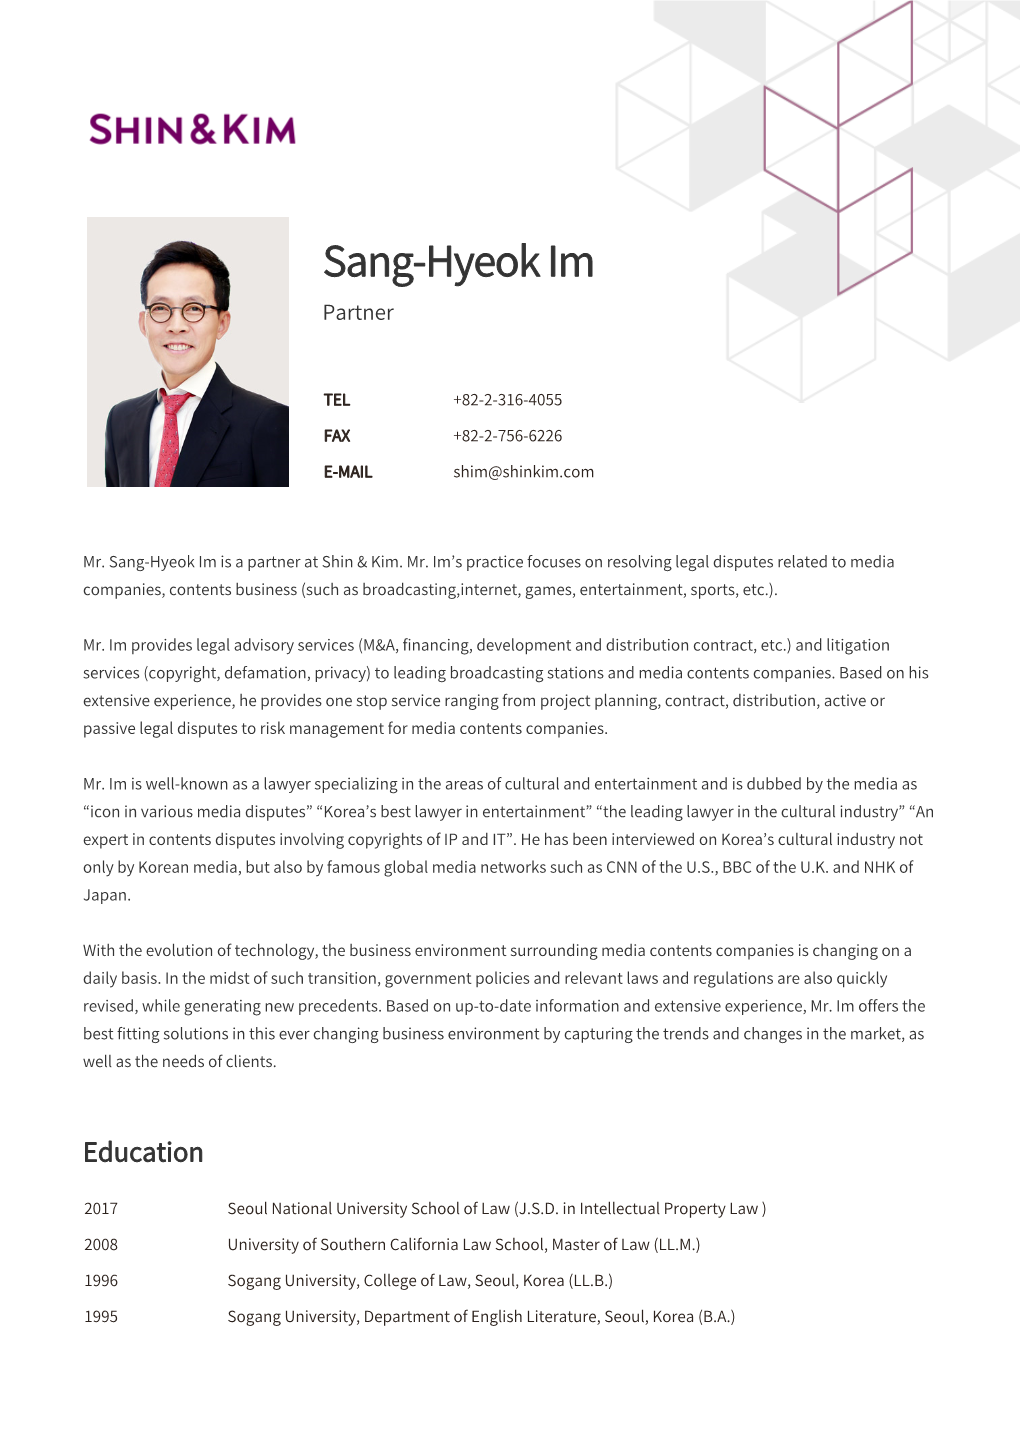 Sang-Hyeok Im